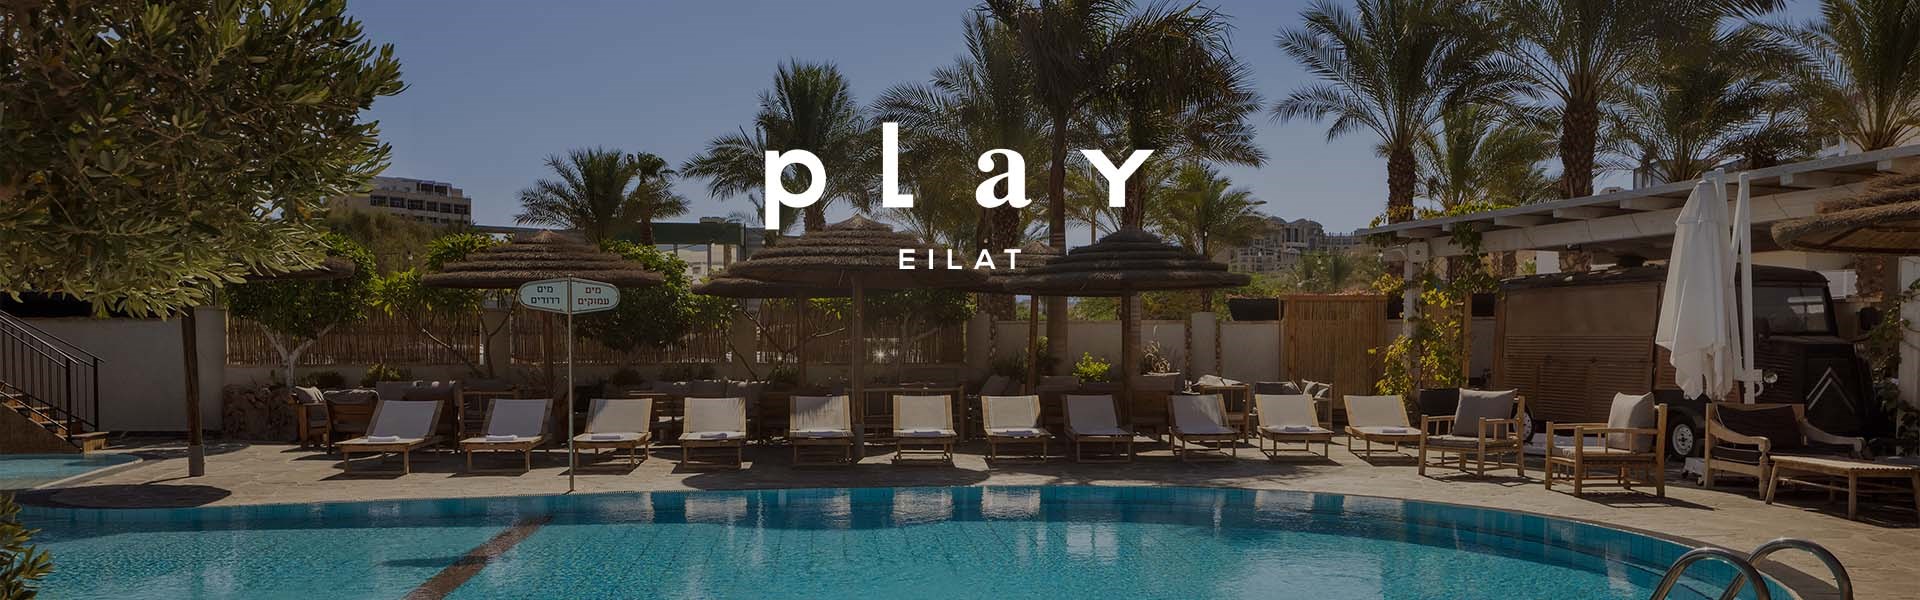 Play Eilat (former Soleil Eilat) - Boutique Hotel 